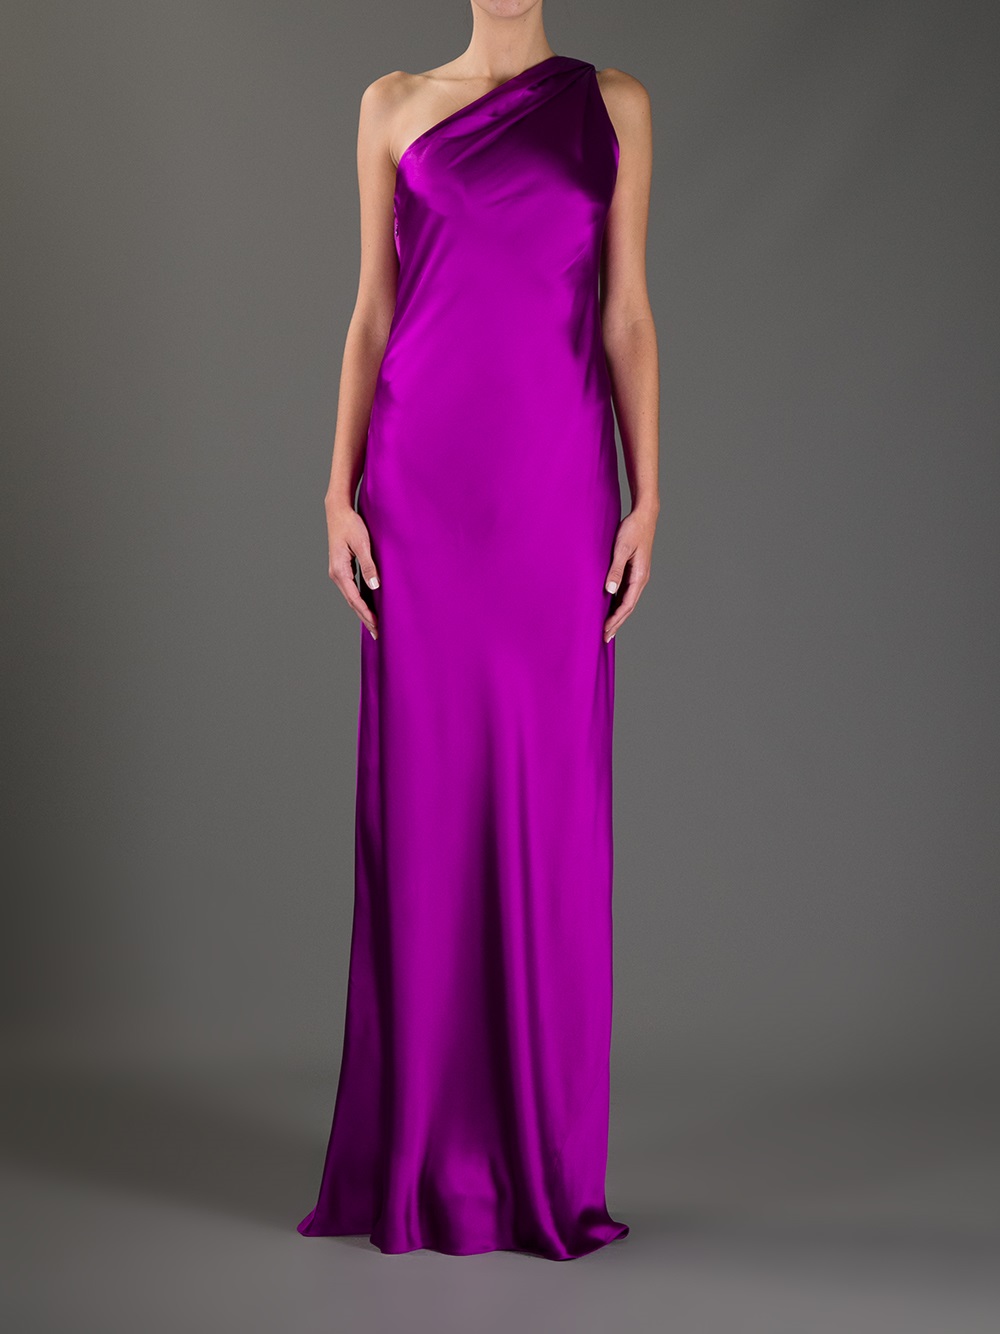 Lyst - Ralph Lauren One Shoulder Gown in Purple